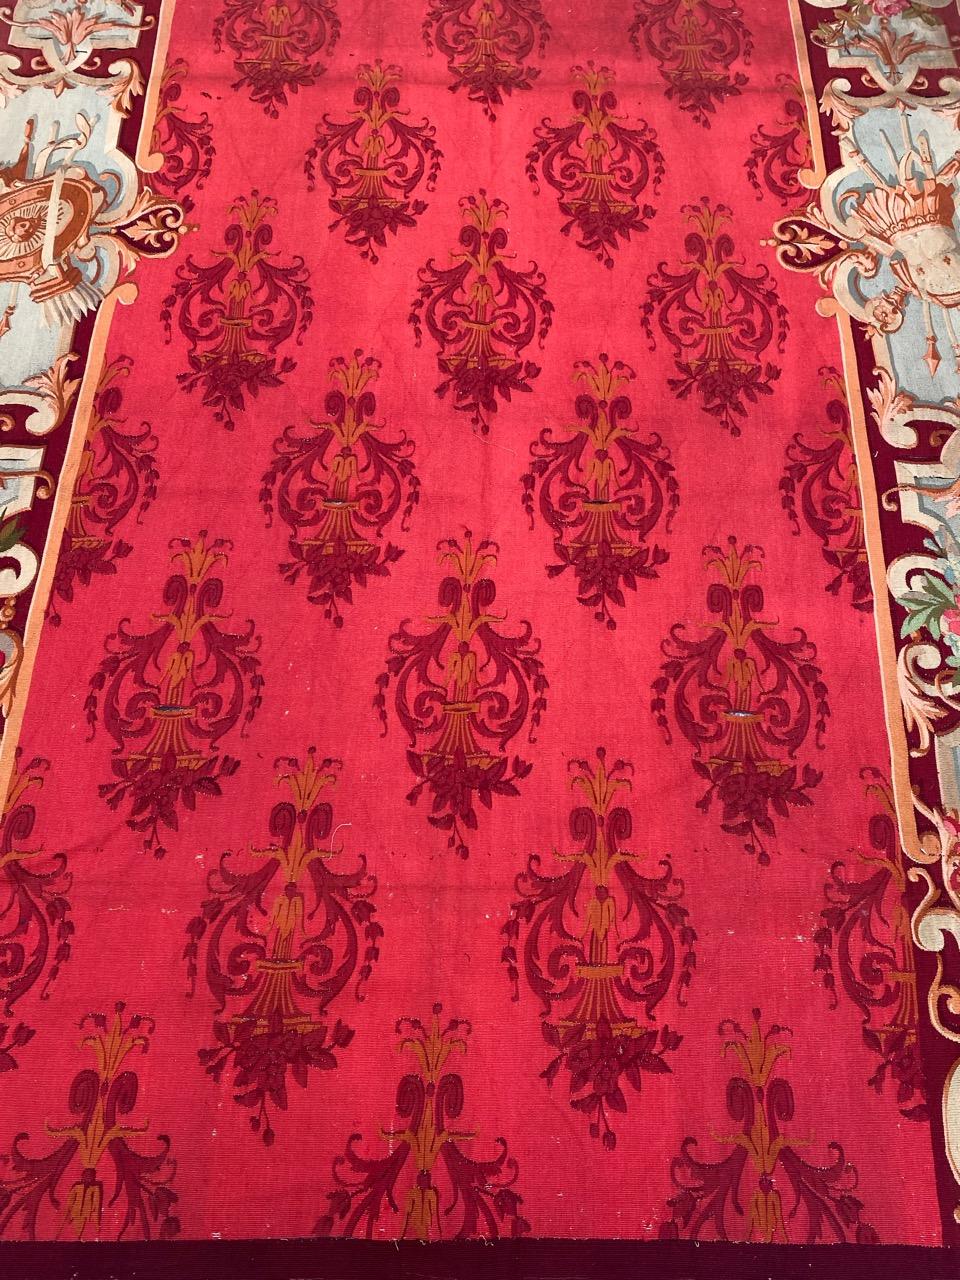 Wunderbare Französisch Aubusson Wandteppiche Panels mit schönen floralen Design und schöne Farben ganz und sehr fein von Hand mit Wolle gewebt.

✨✨✨
